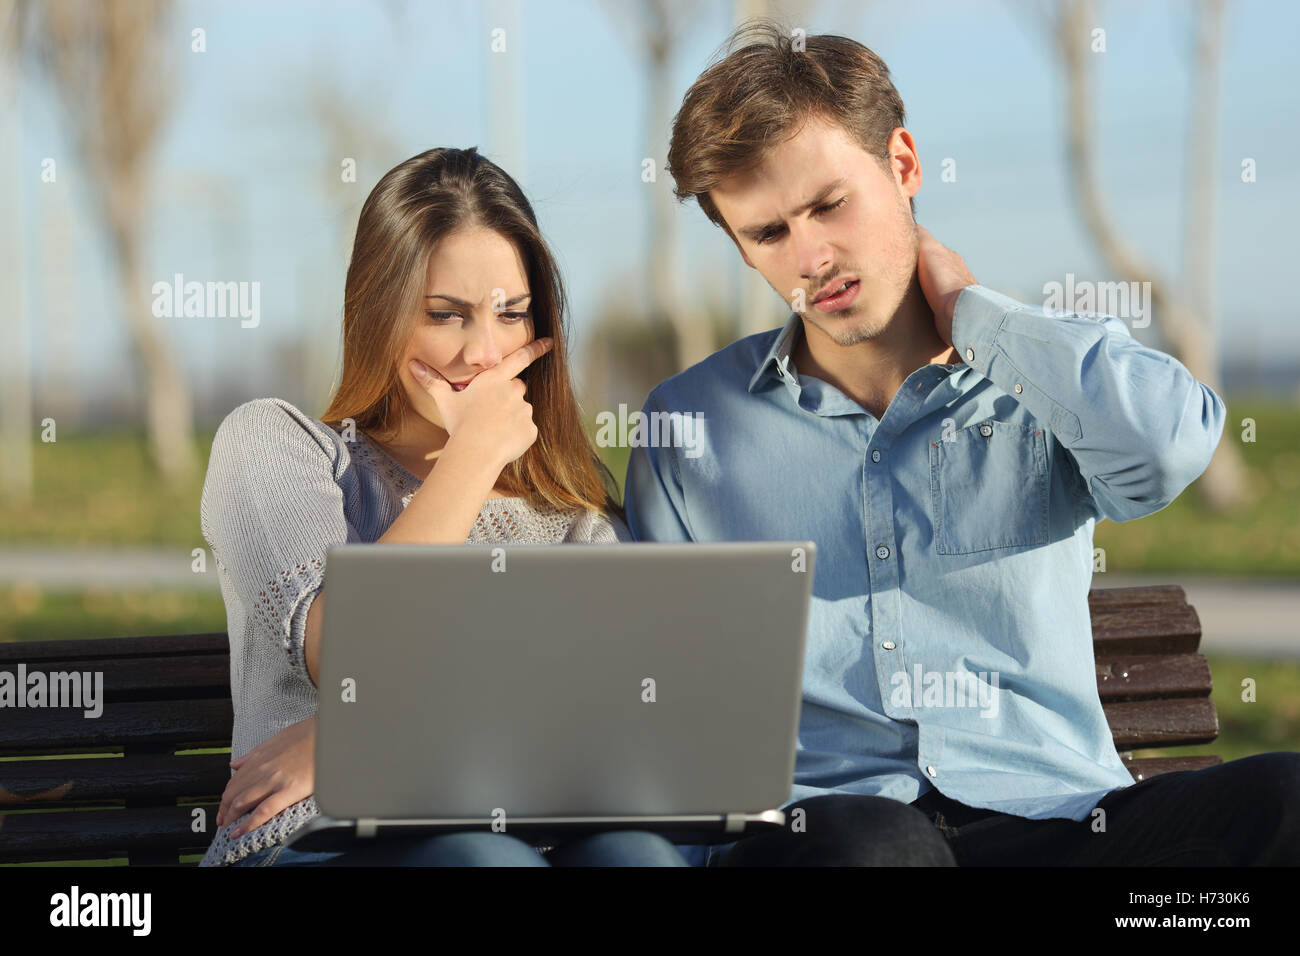 Les étudiants entrepreneurs inquiets ou regarder un laptop outdoors Banque D'Images